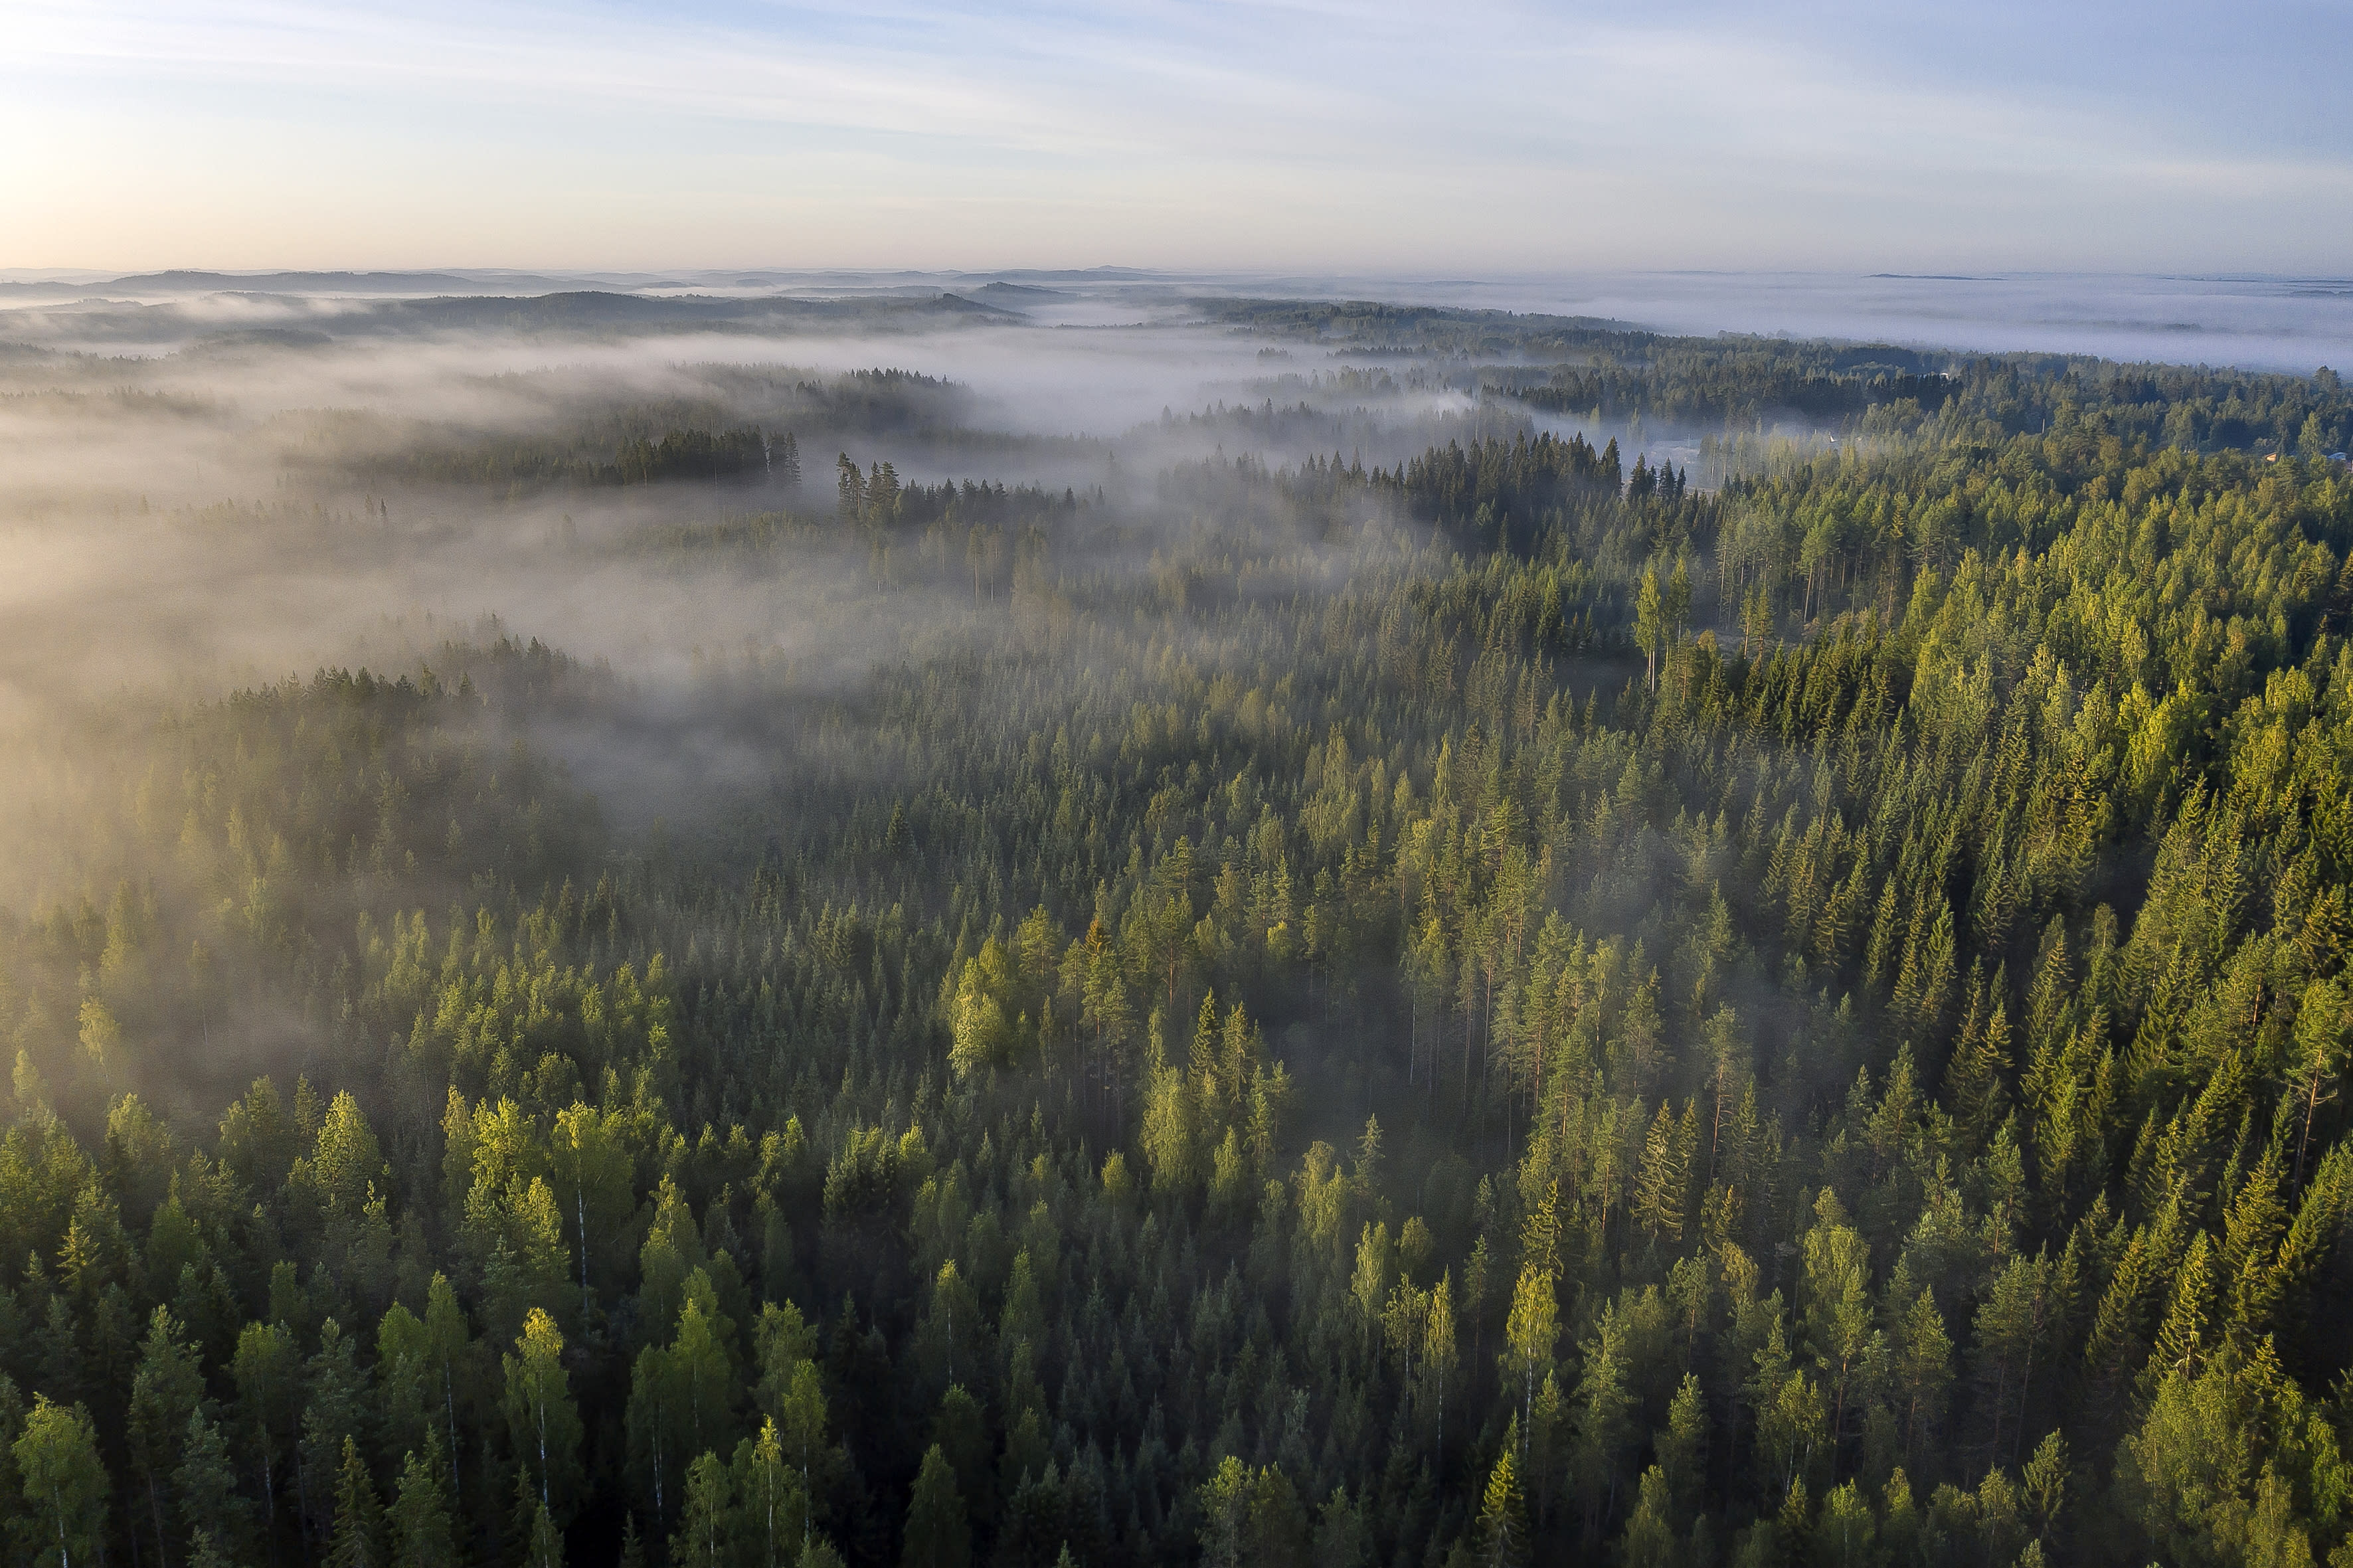 Finnland müsse mehr tun, um die Emissionsziele zu erreichen, heißt es im Bericht des Ministeriums